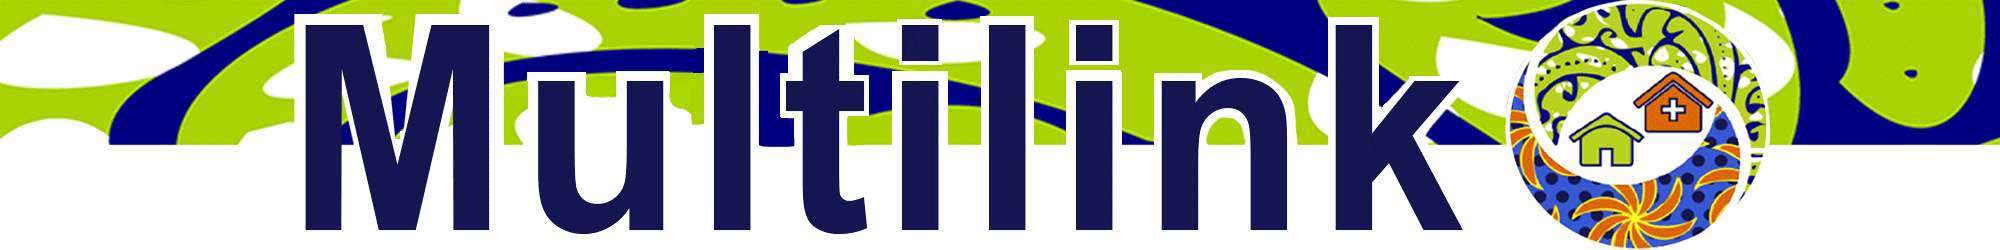 Multilink Consortium banner logo